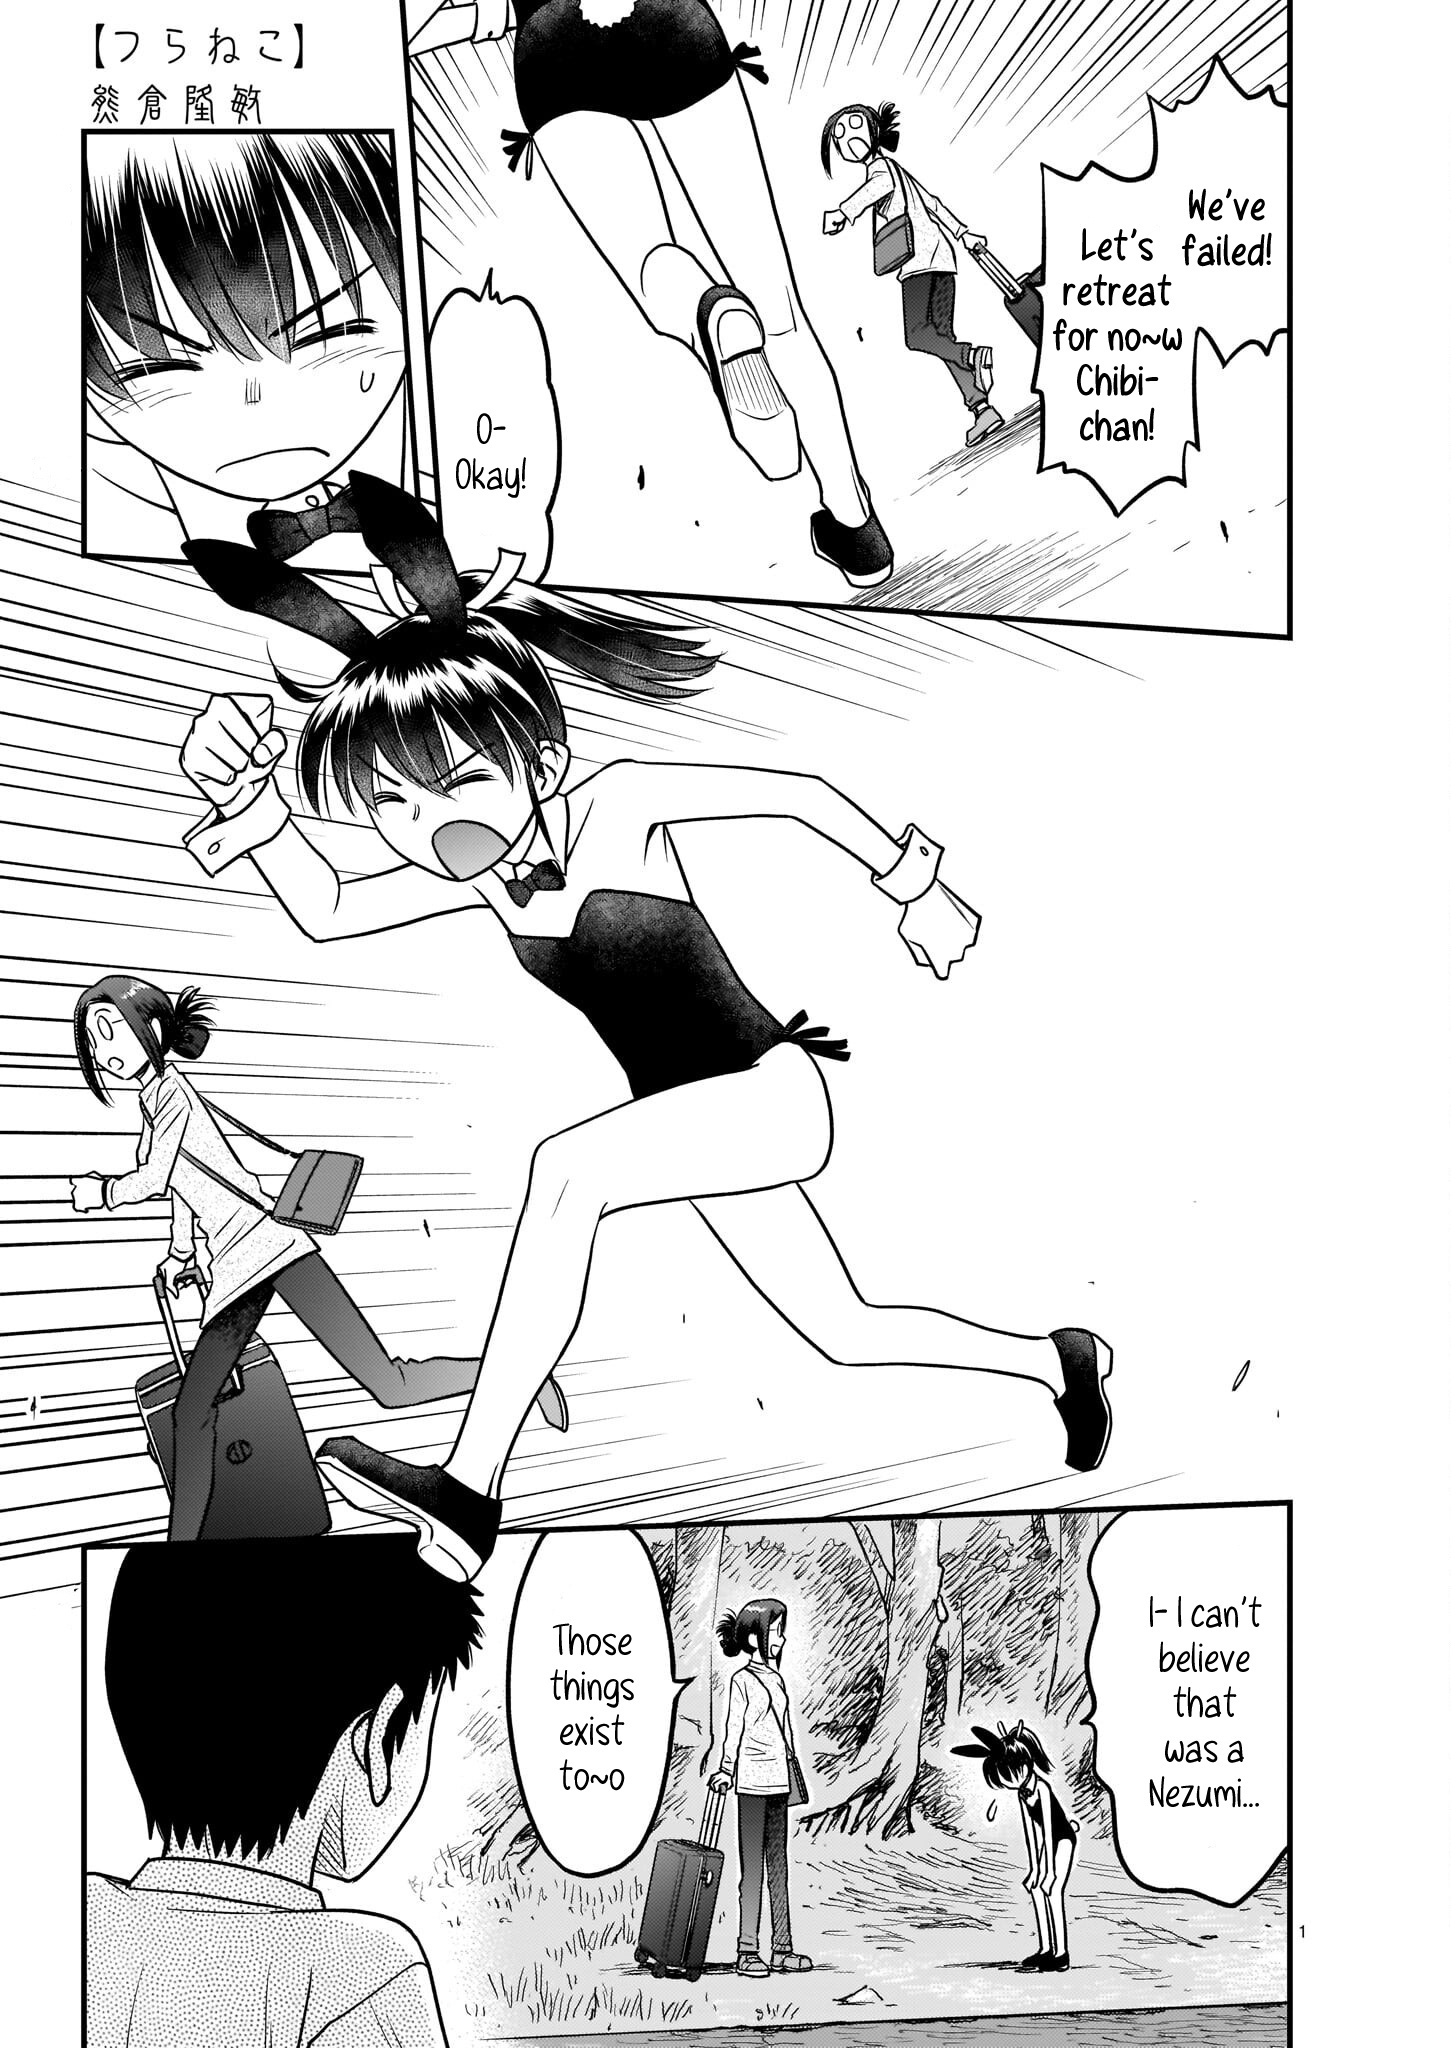 Tsuraneko - Page 1